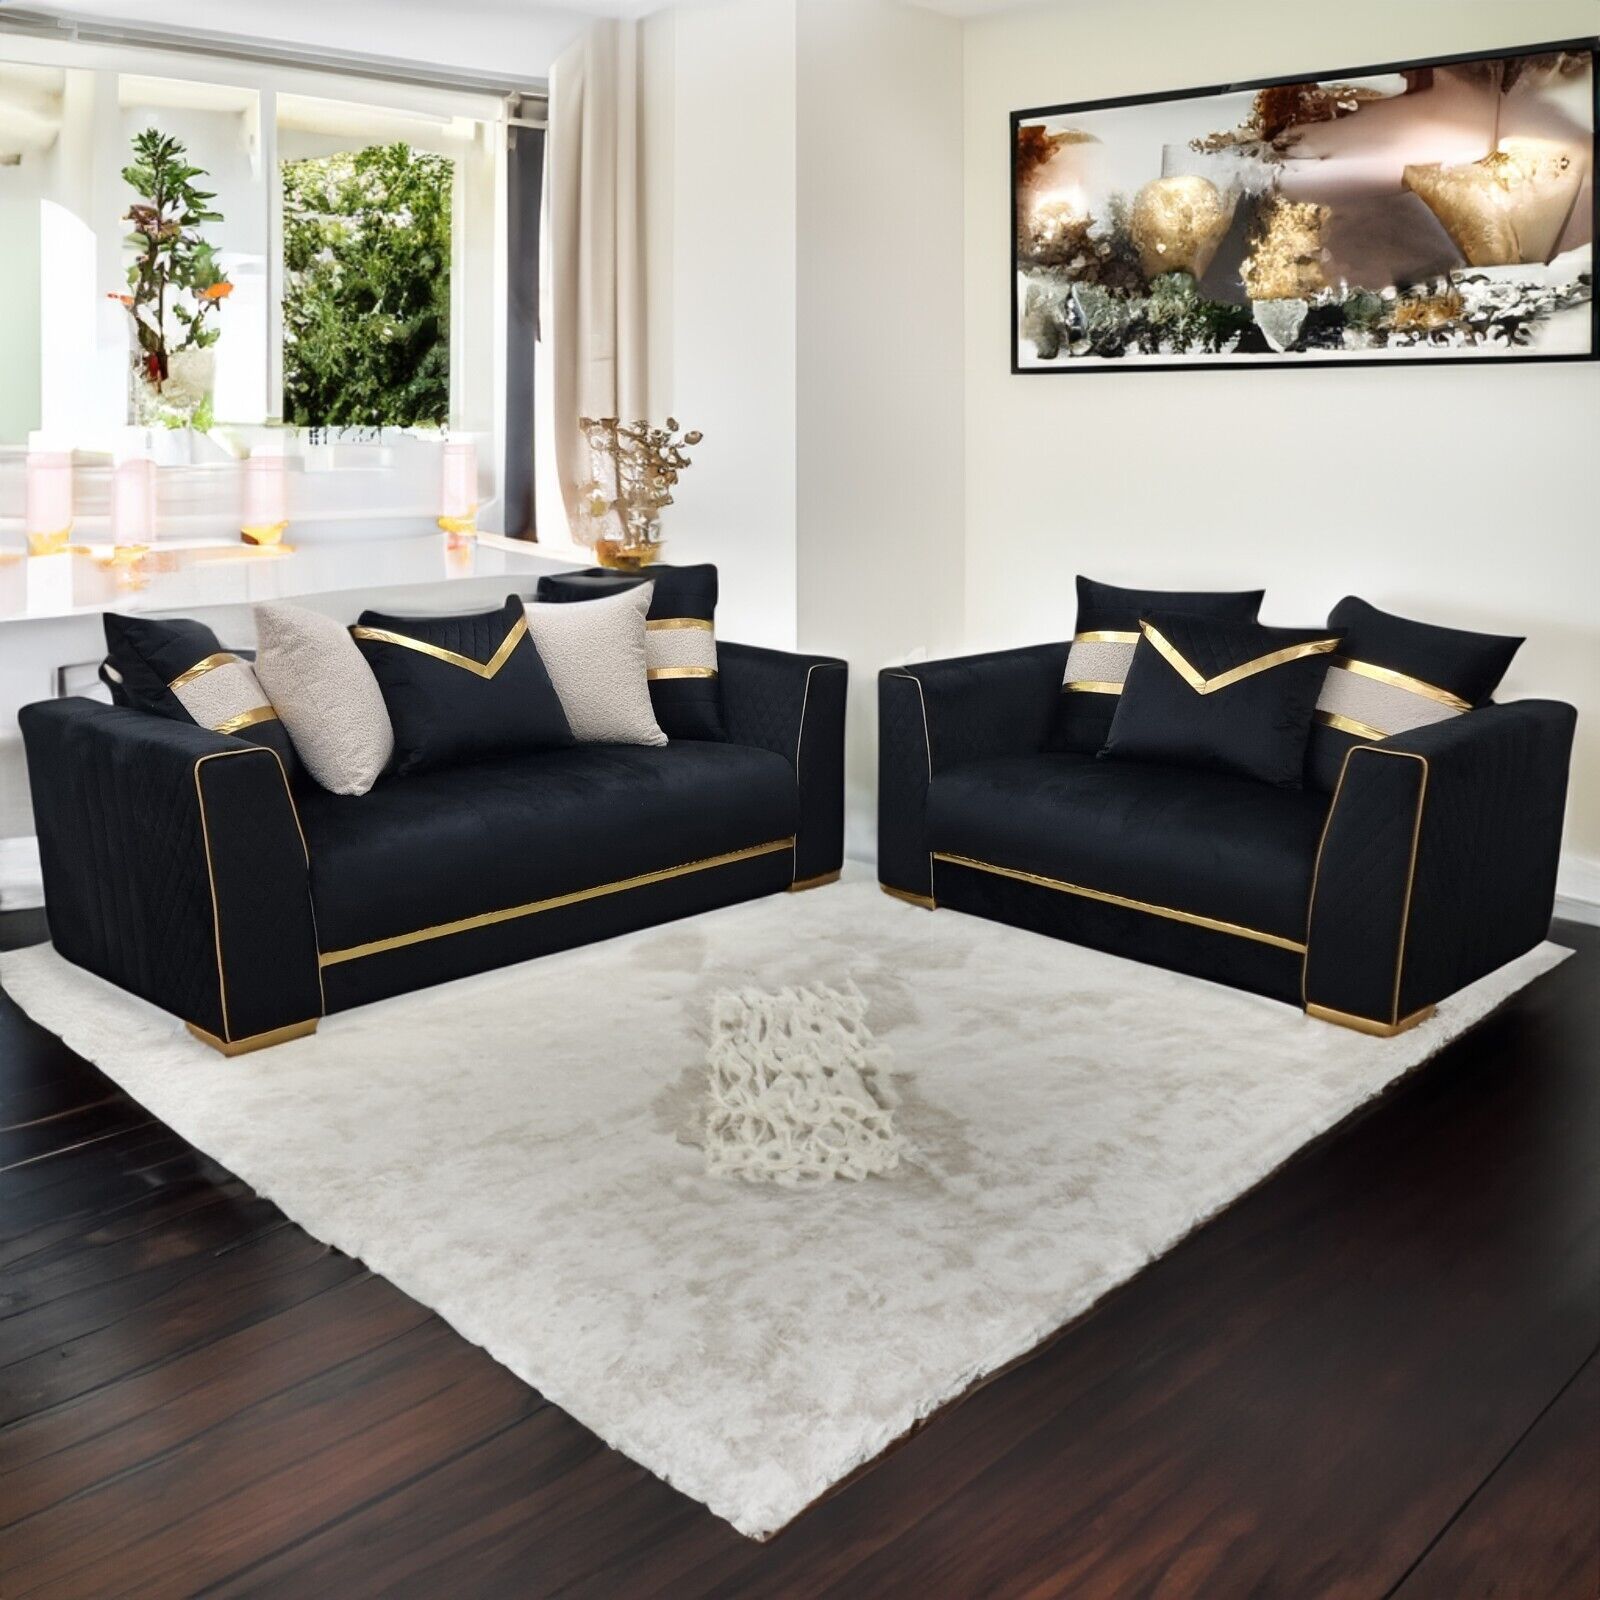 Furnituredw Empire 3 & 2 Seater Velvet Sofa Set Black & Gold For Living  Room | Ebay With Regard To Black Velvet Sofas (Photo 14 of 15)